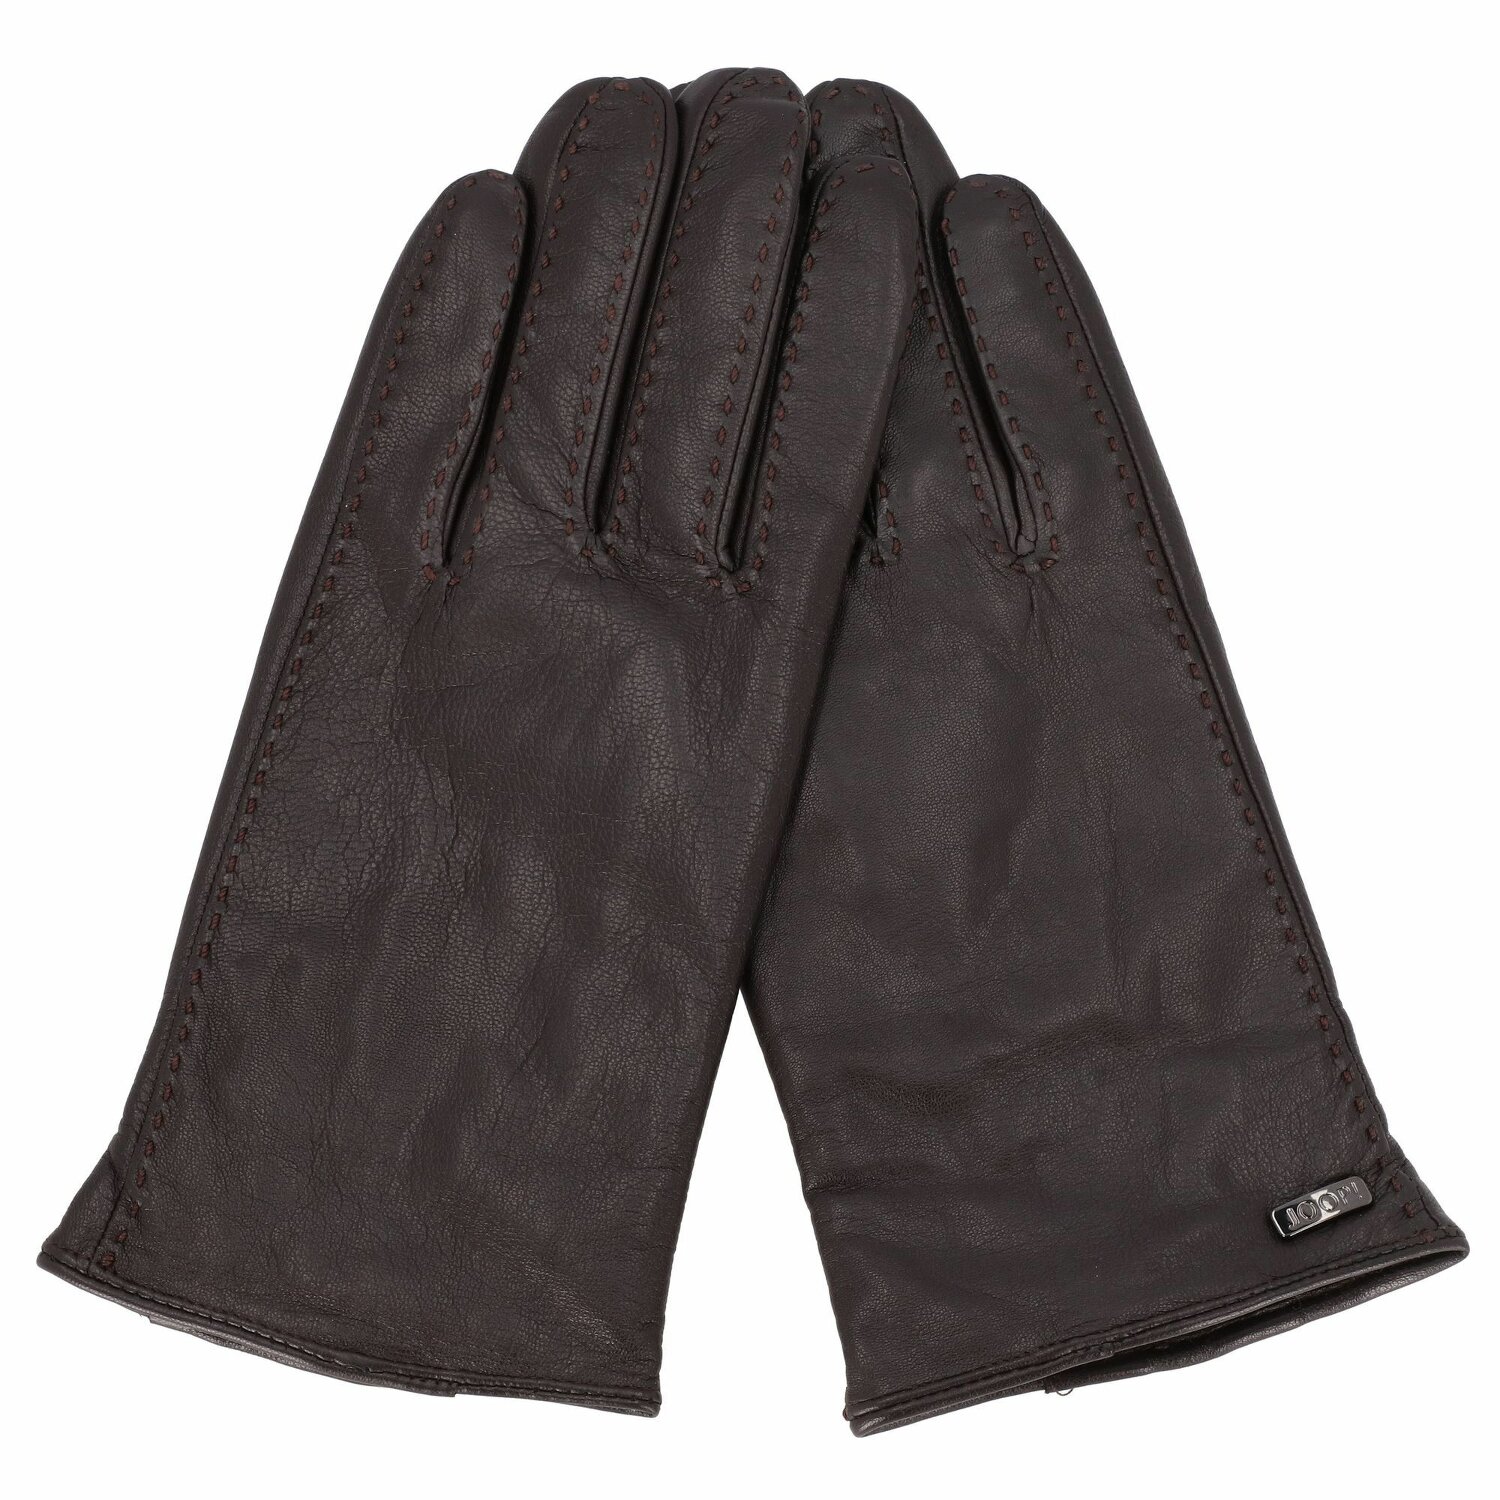 | Joop! dark Handschuhe S | brown Leder bei